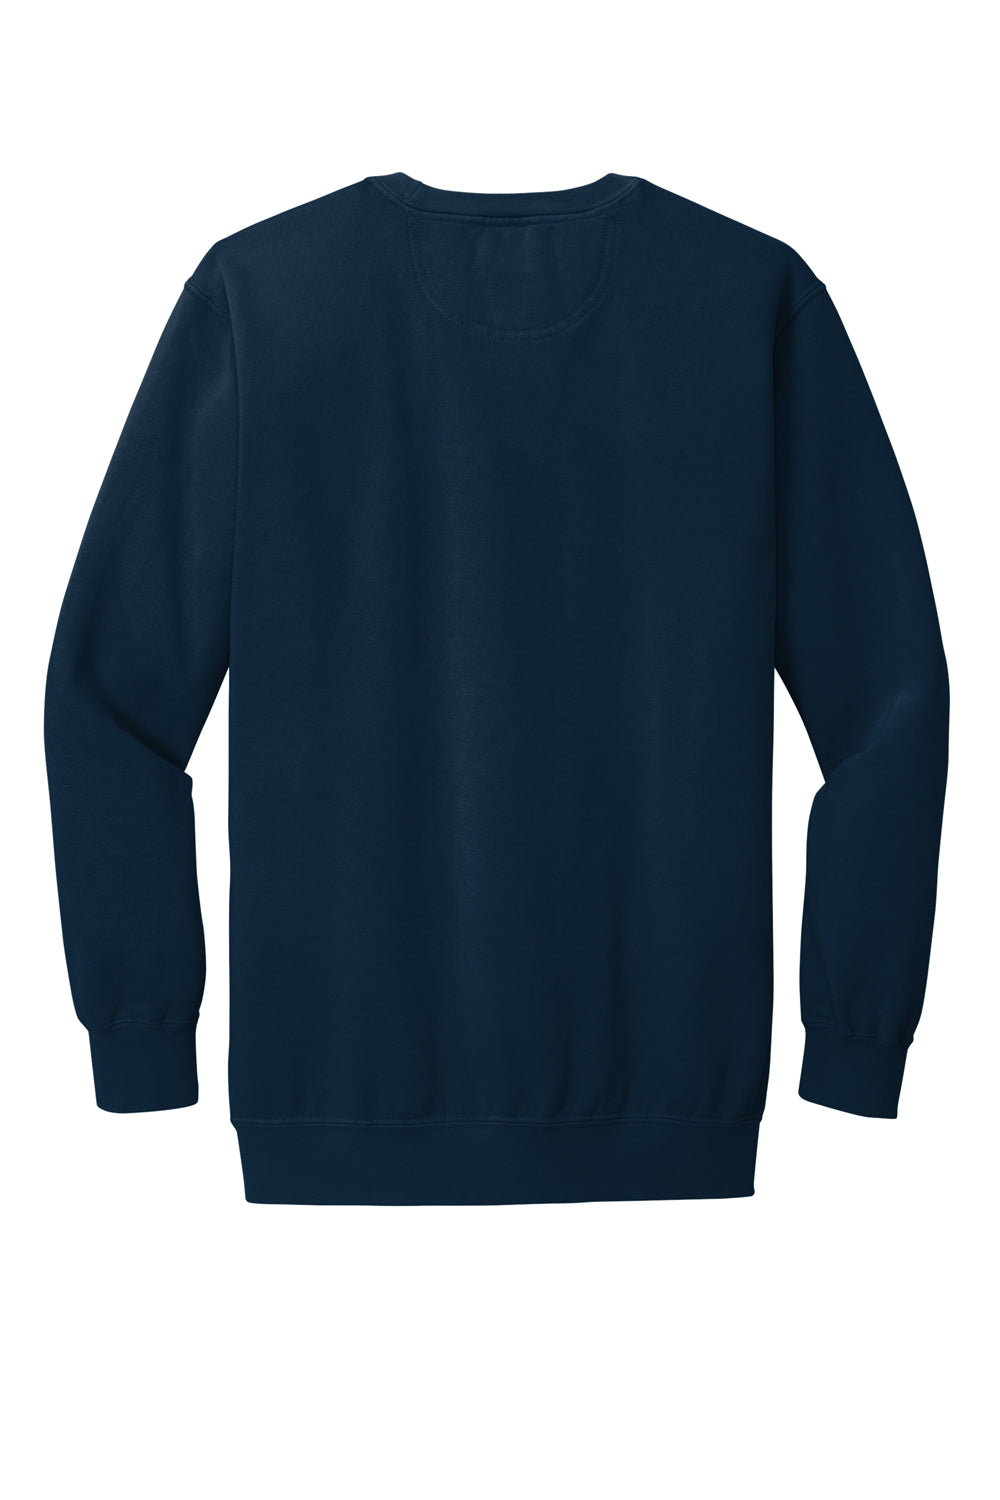 Comfort Colors 1566 Mens Crewneck Sweatshirt True Navy Blue Flat Back